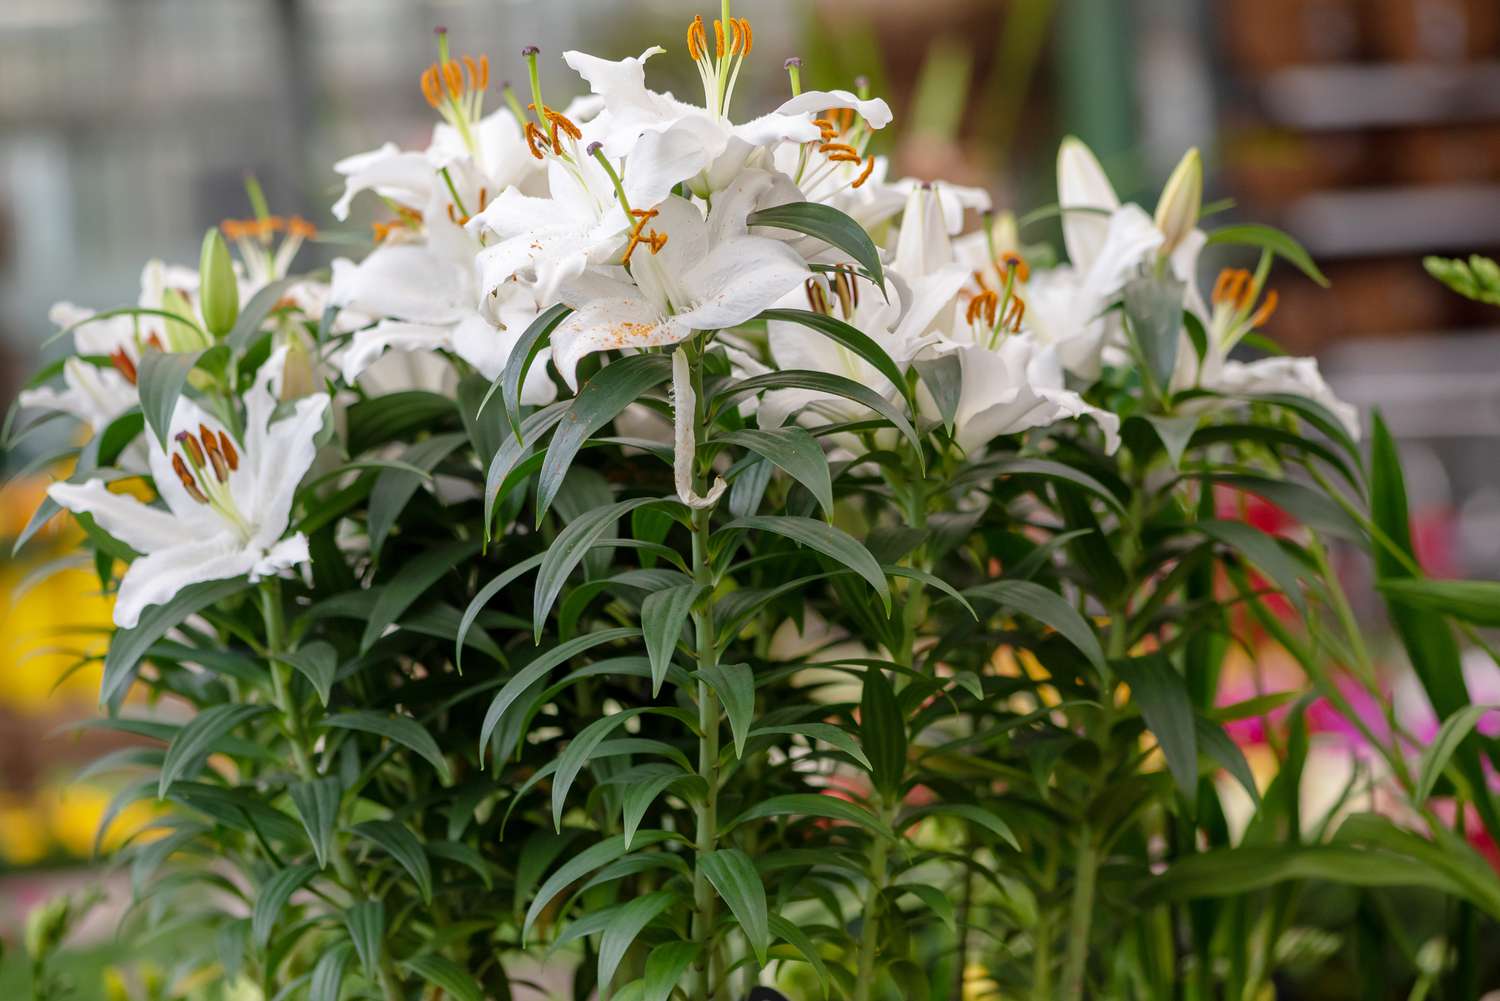 Lirio Casa blanca con flores blancas agrupadas en tallos altos 